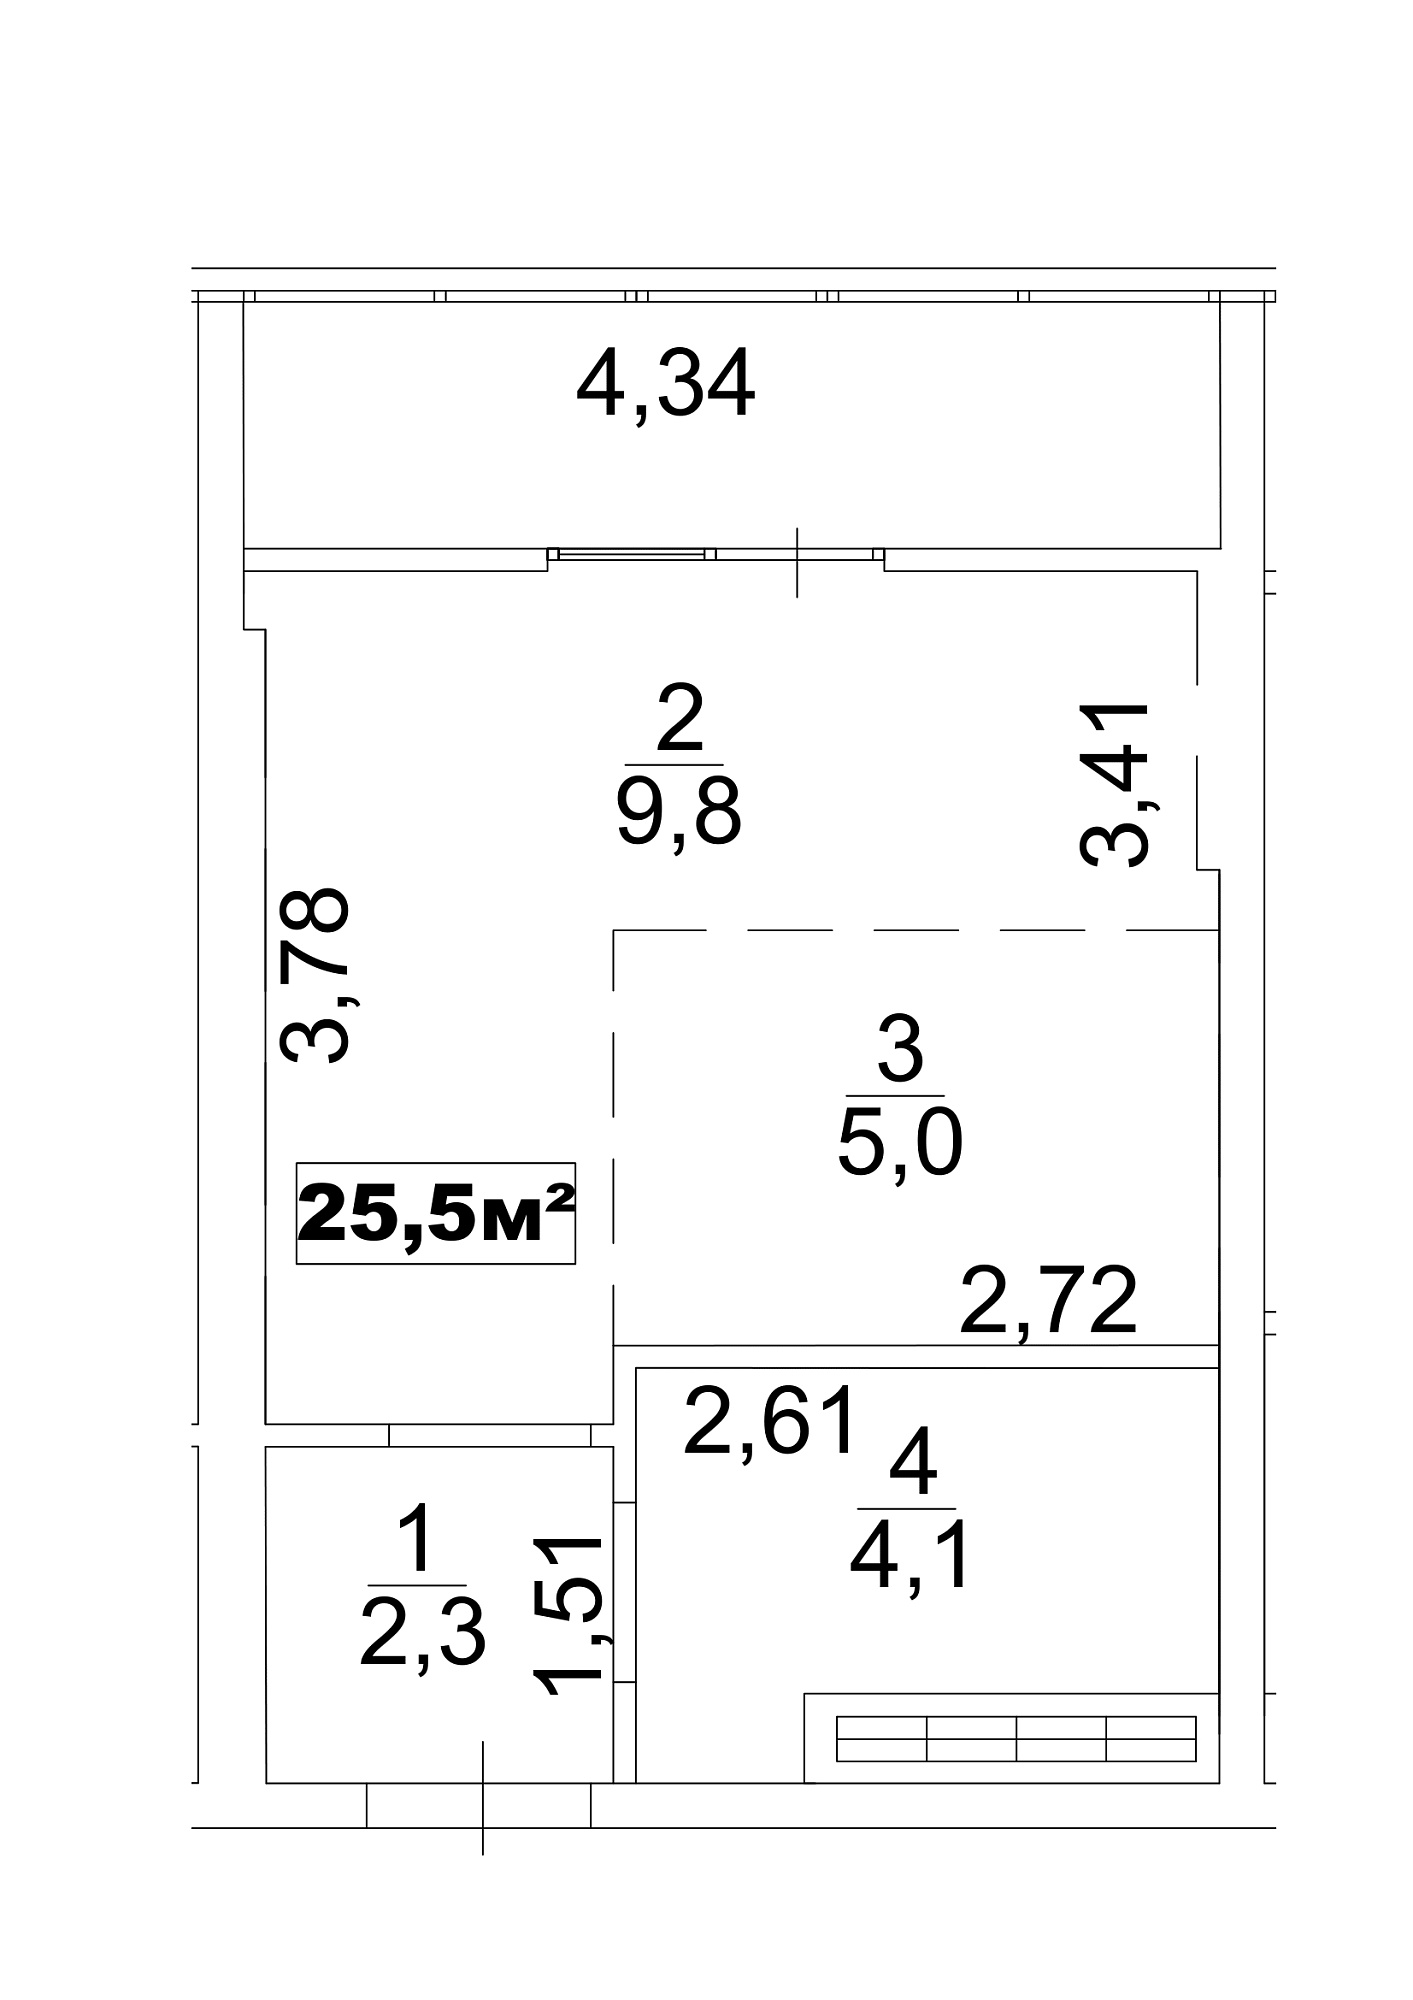 Планування Smart-квартира площею 25.5м2, AB-13-06/0045в.